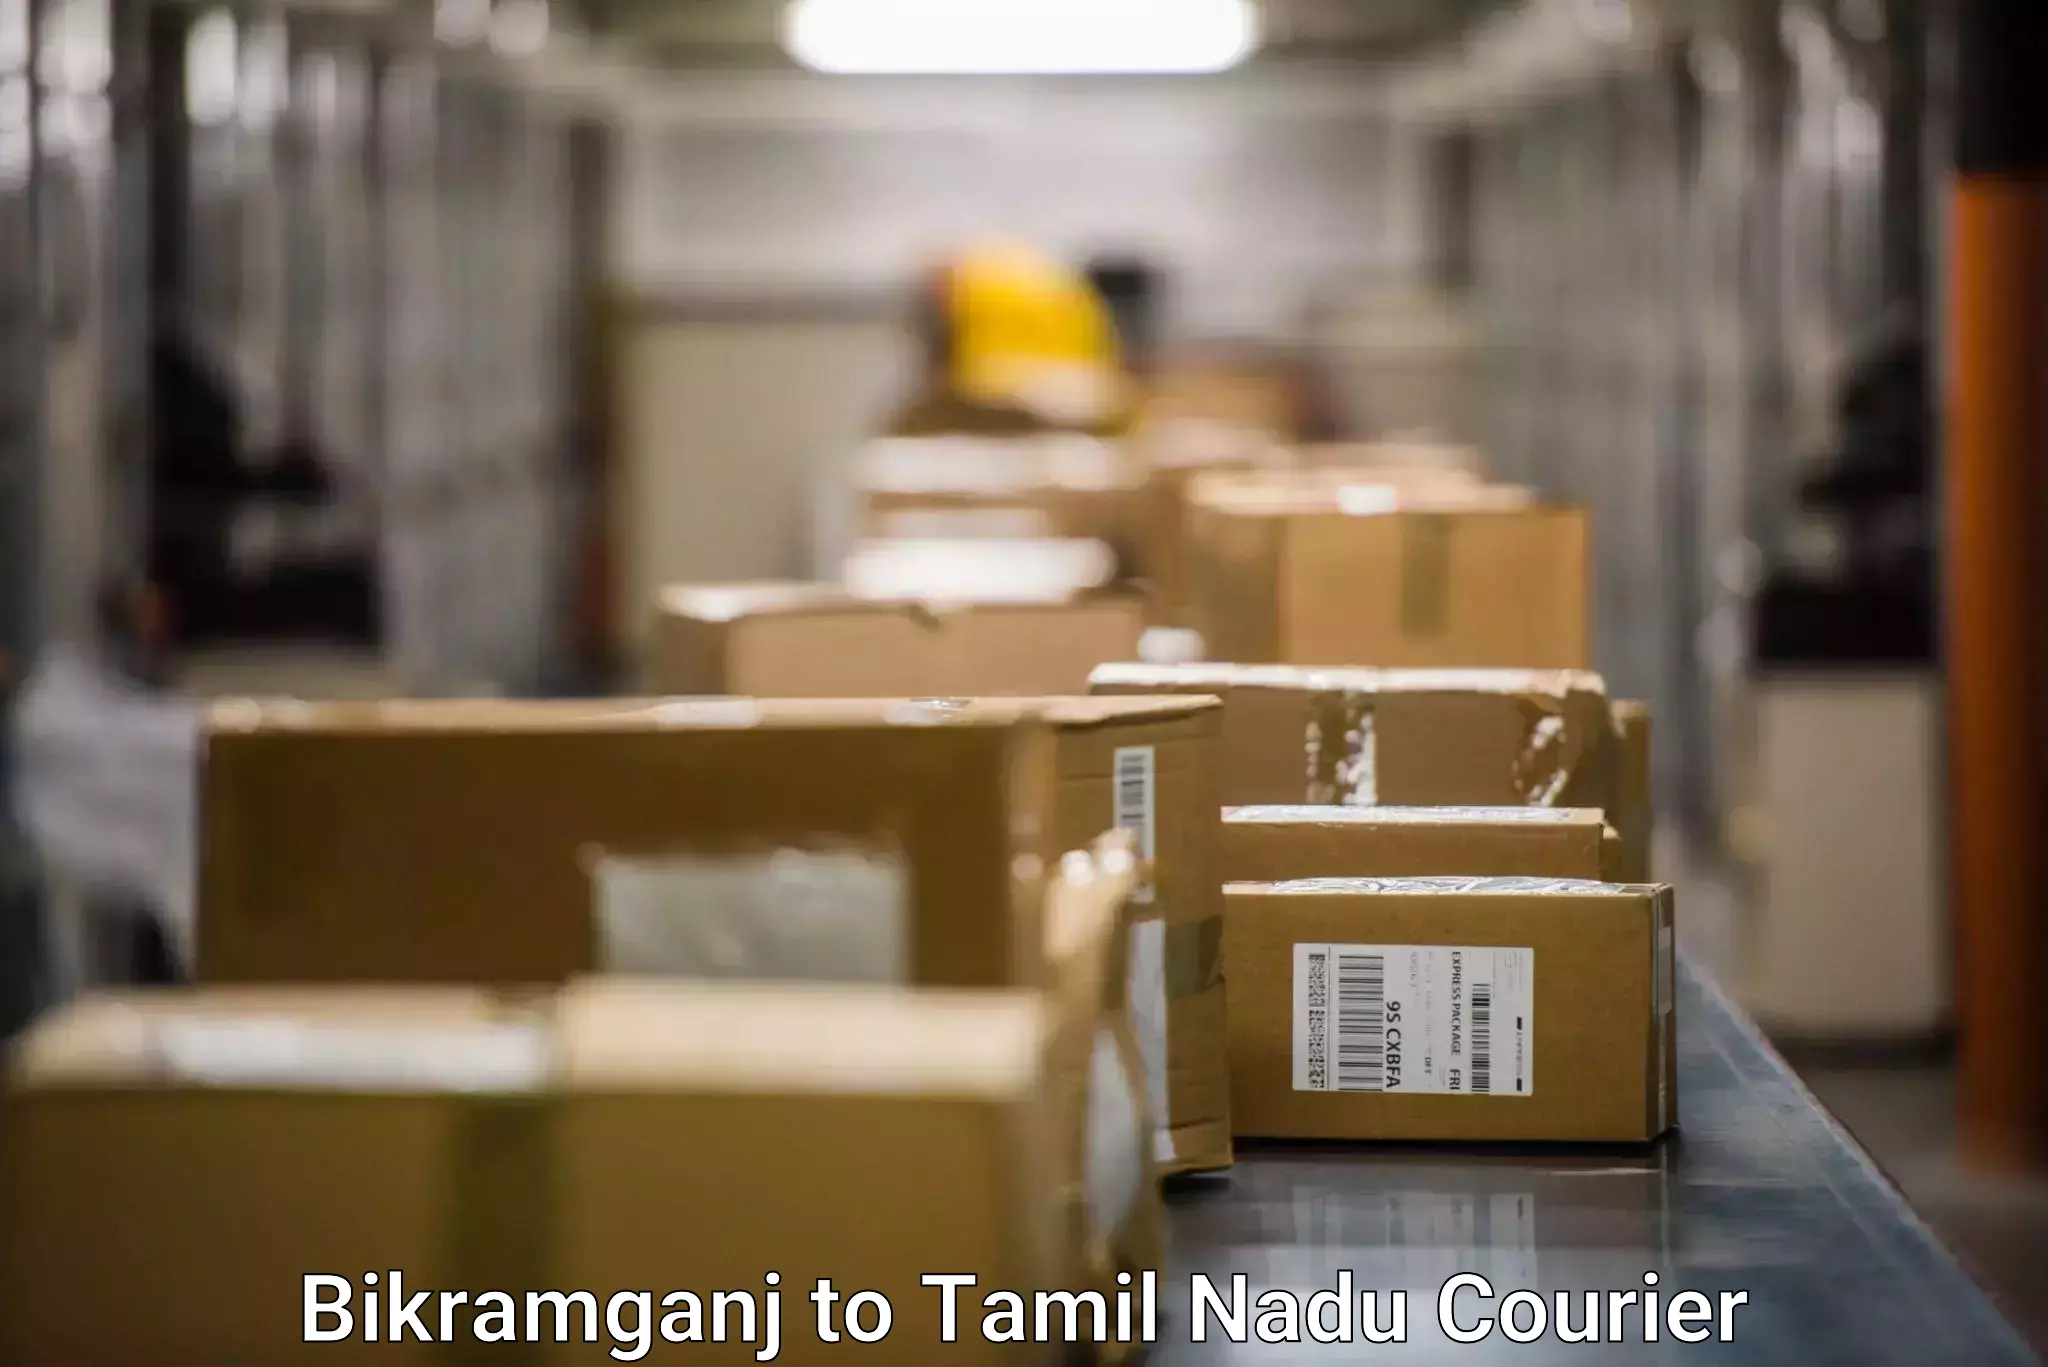 Nationwide delivery network Bikramganj to Tamil Nadu